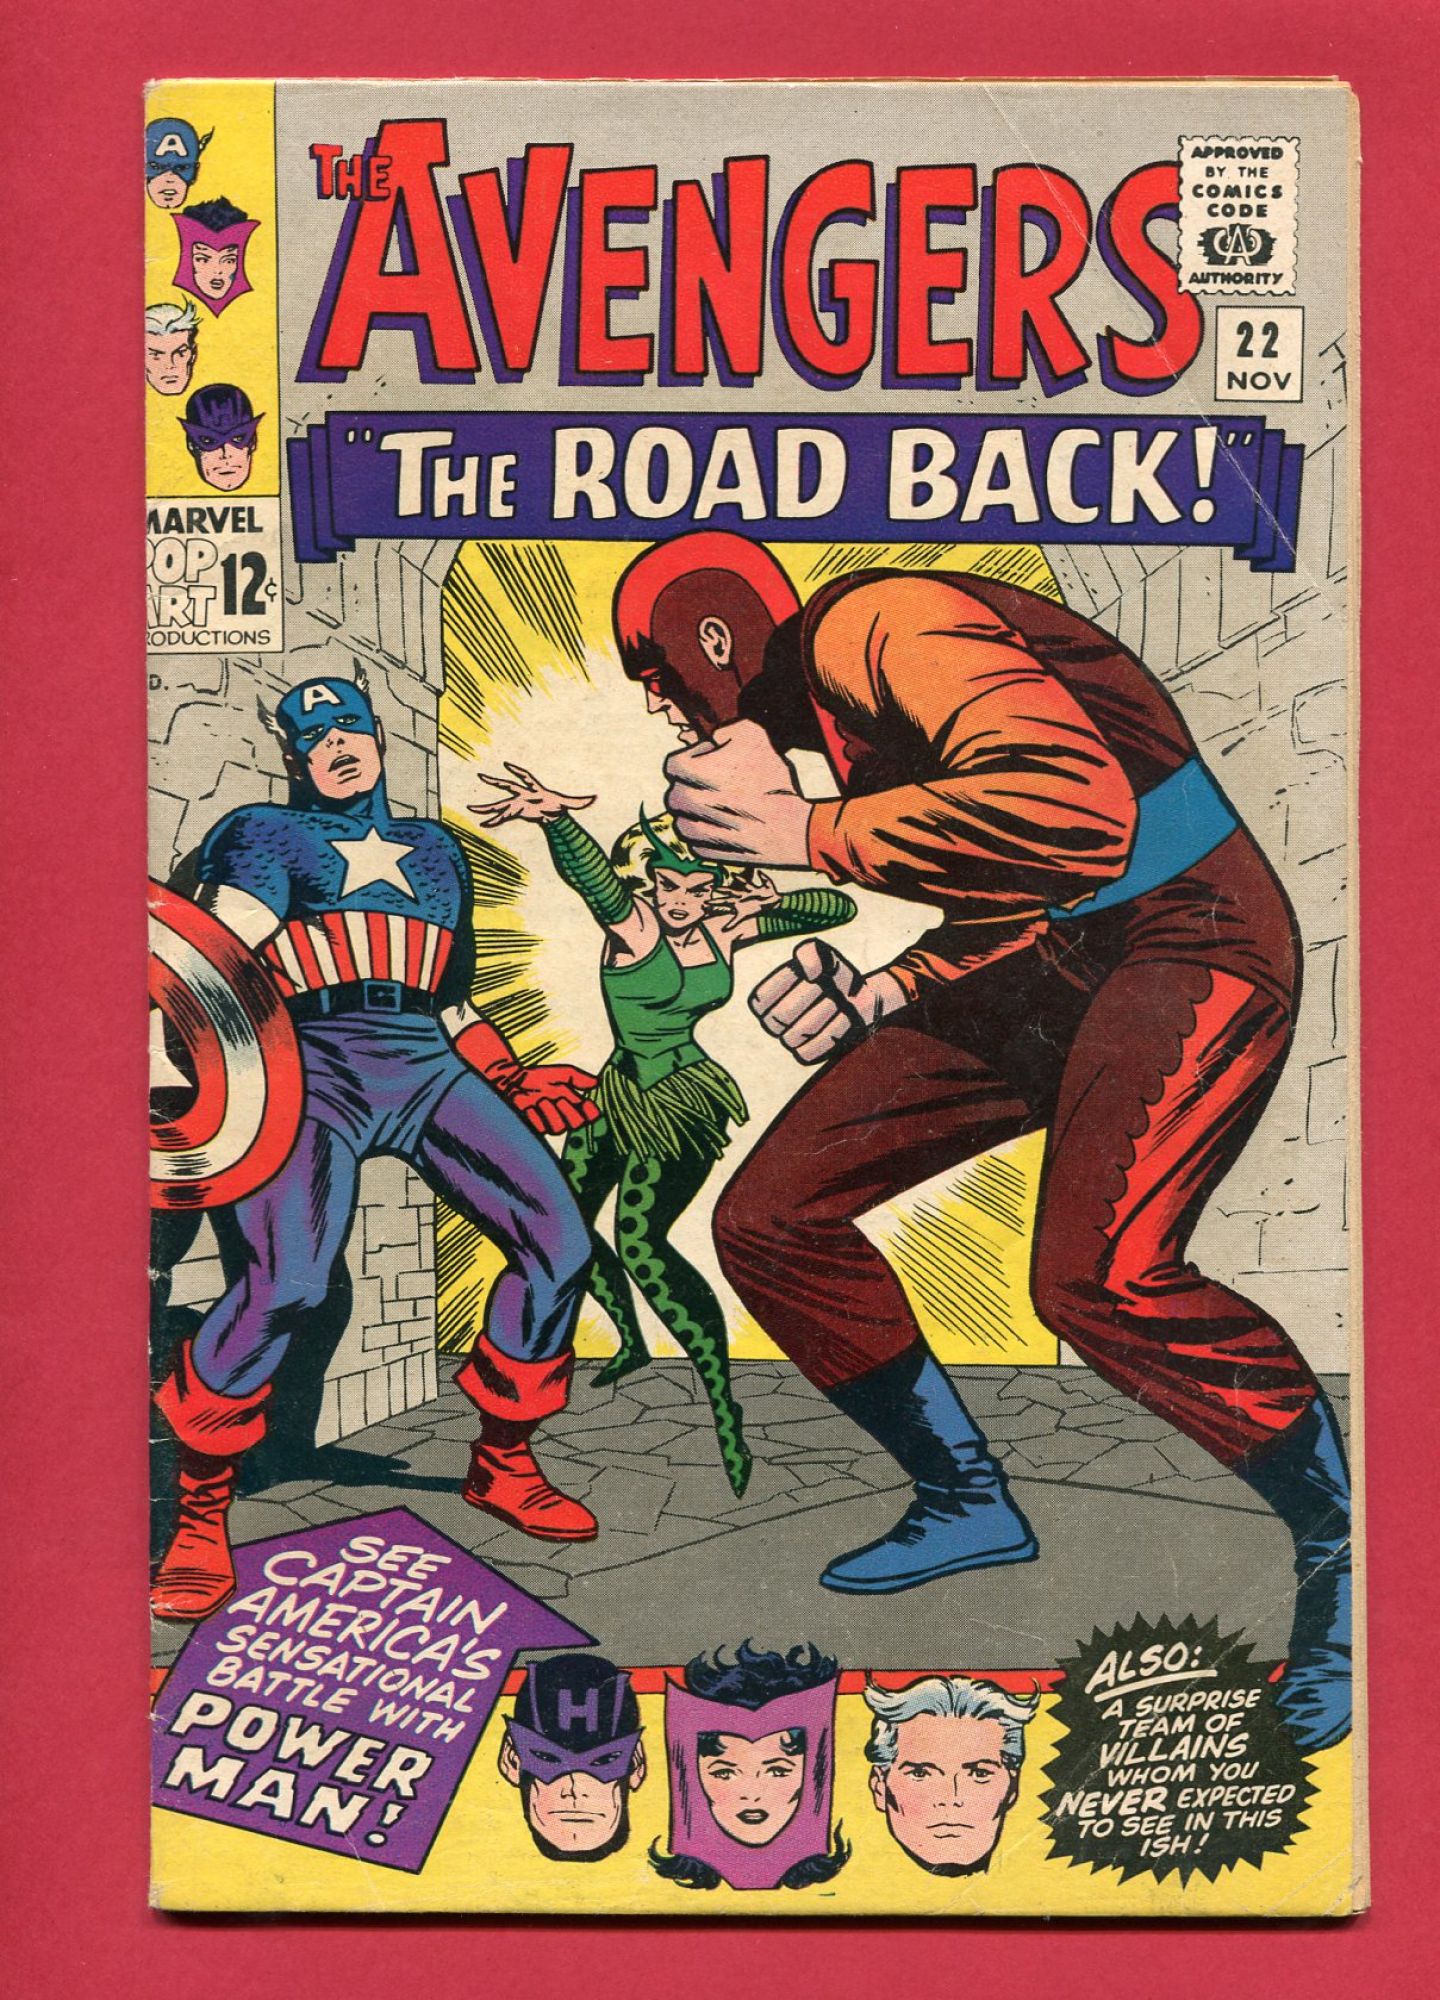 Avengers #22, Nov 1965, 6.0 FN